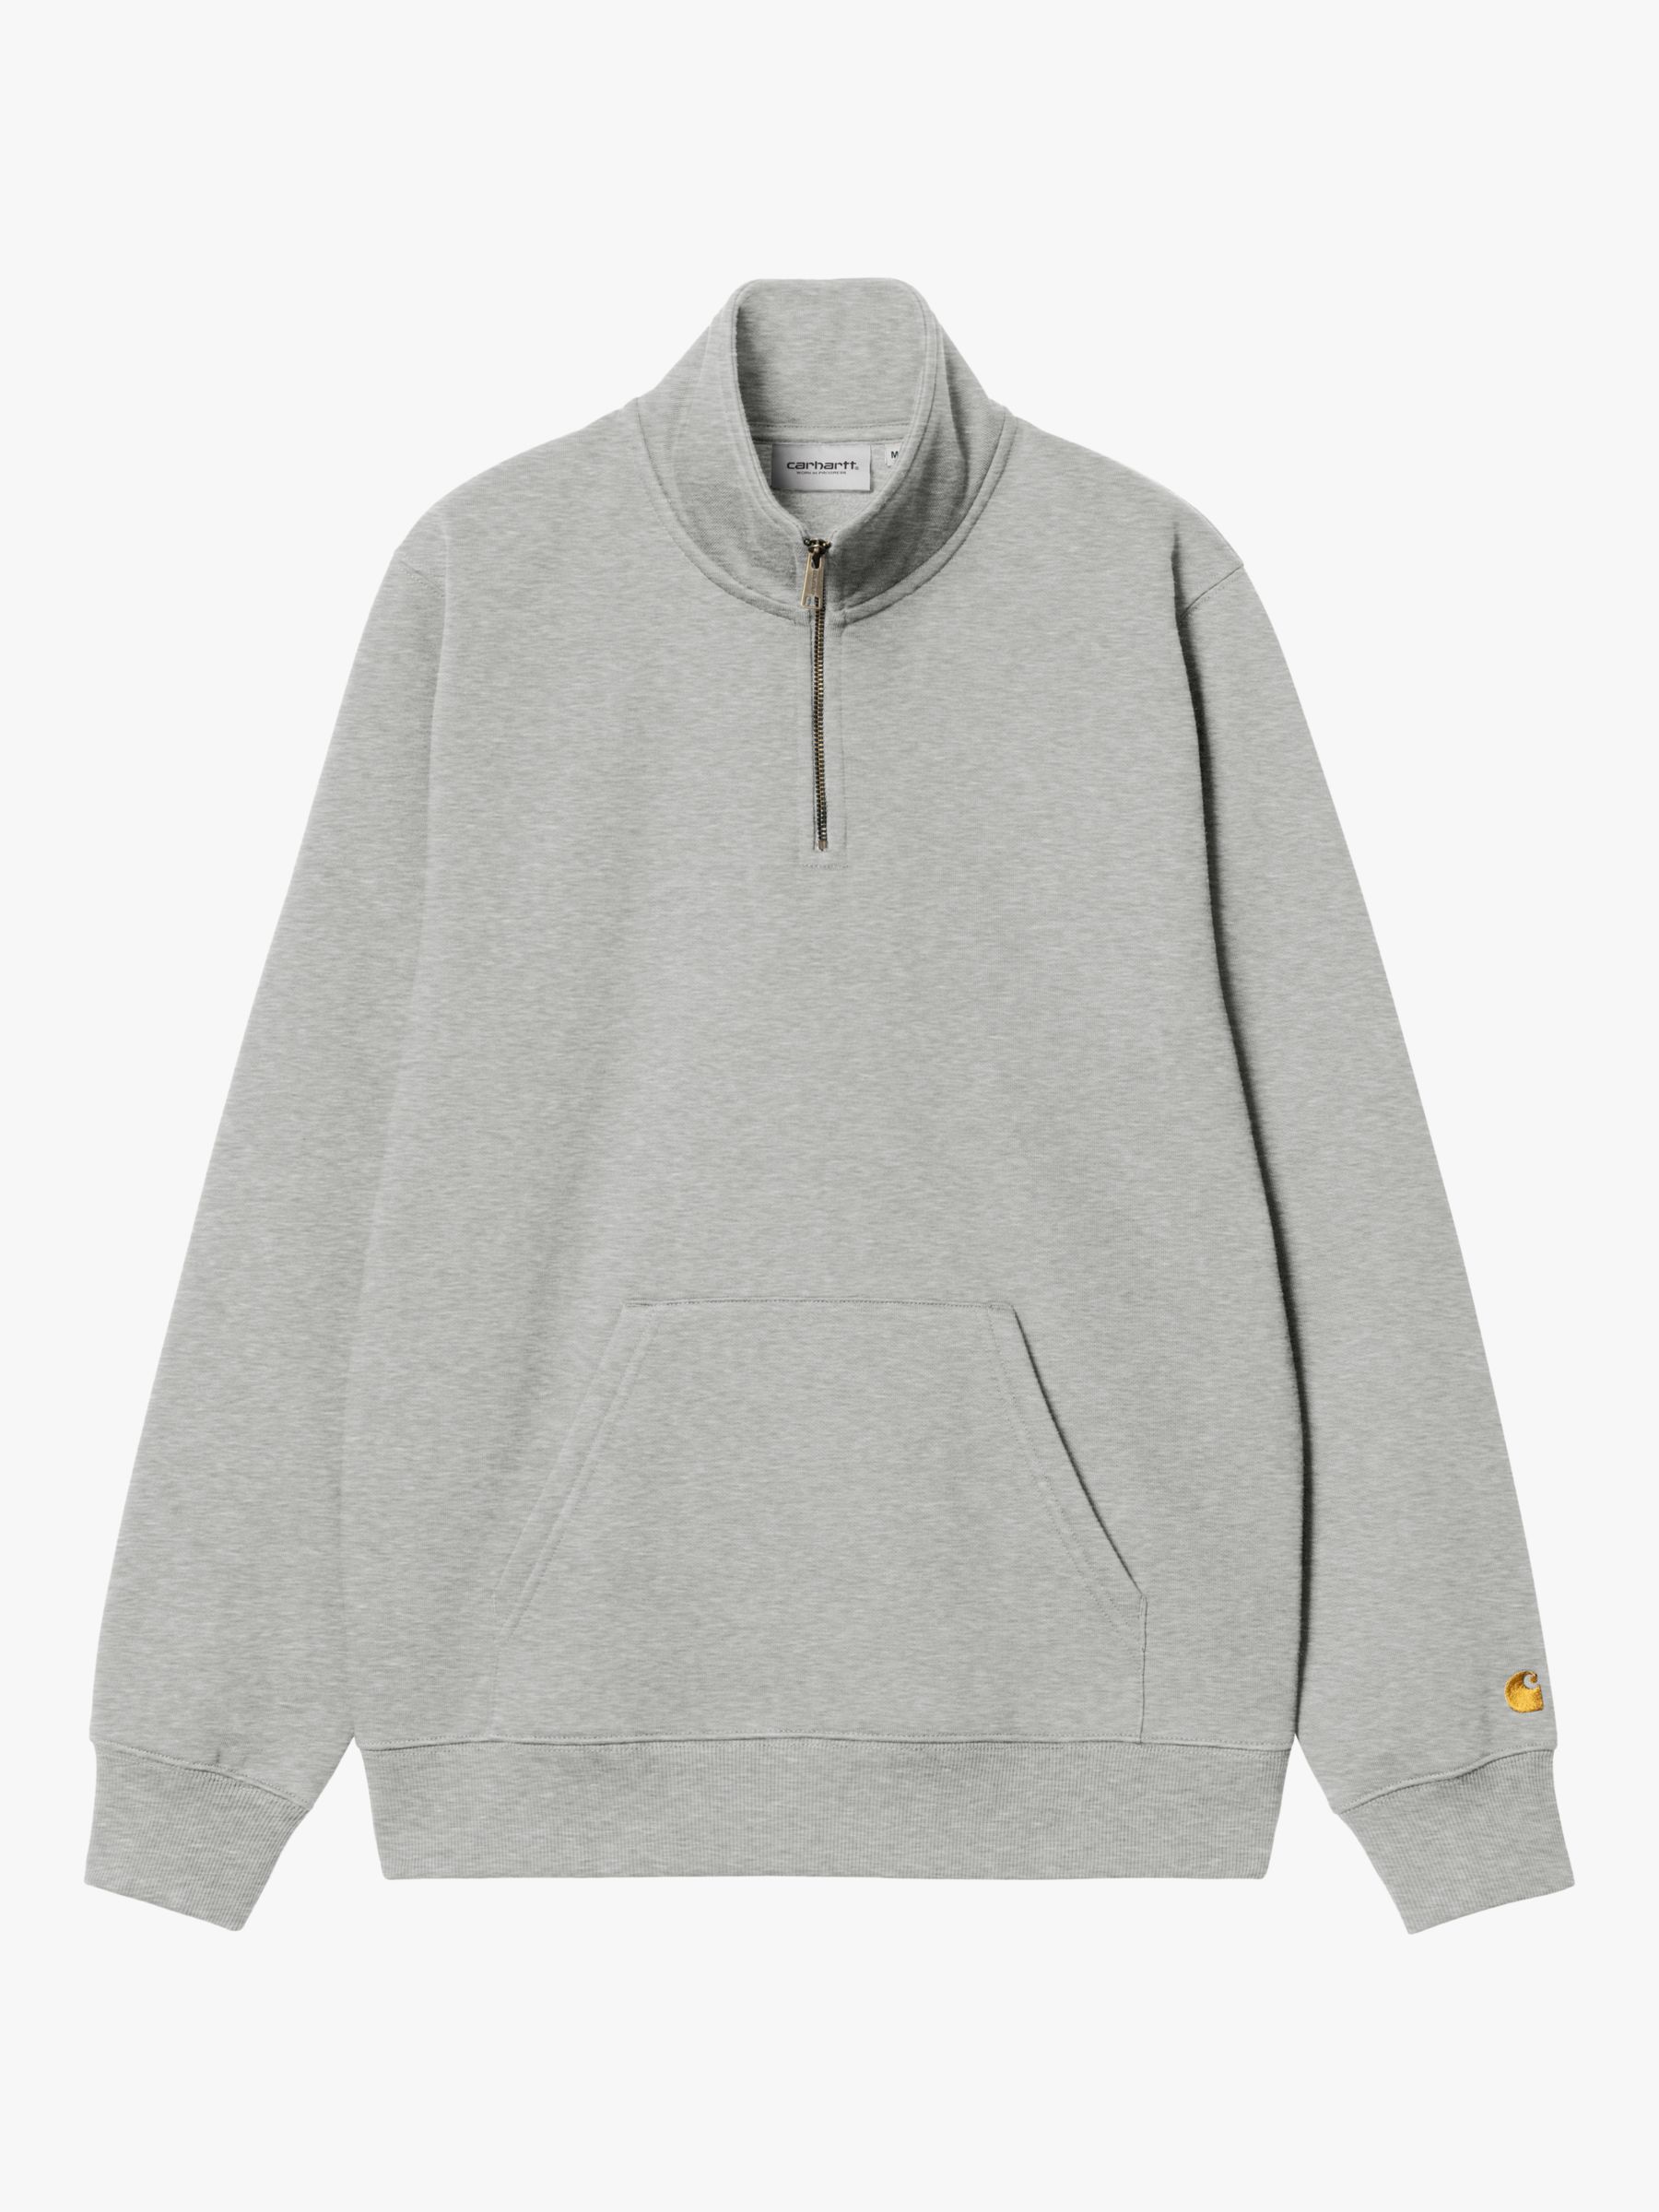 Carhartt WIP Regular Fit Zip Fleece Top, Grey, S